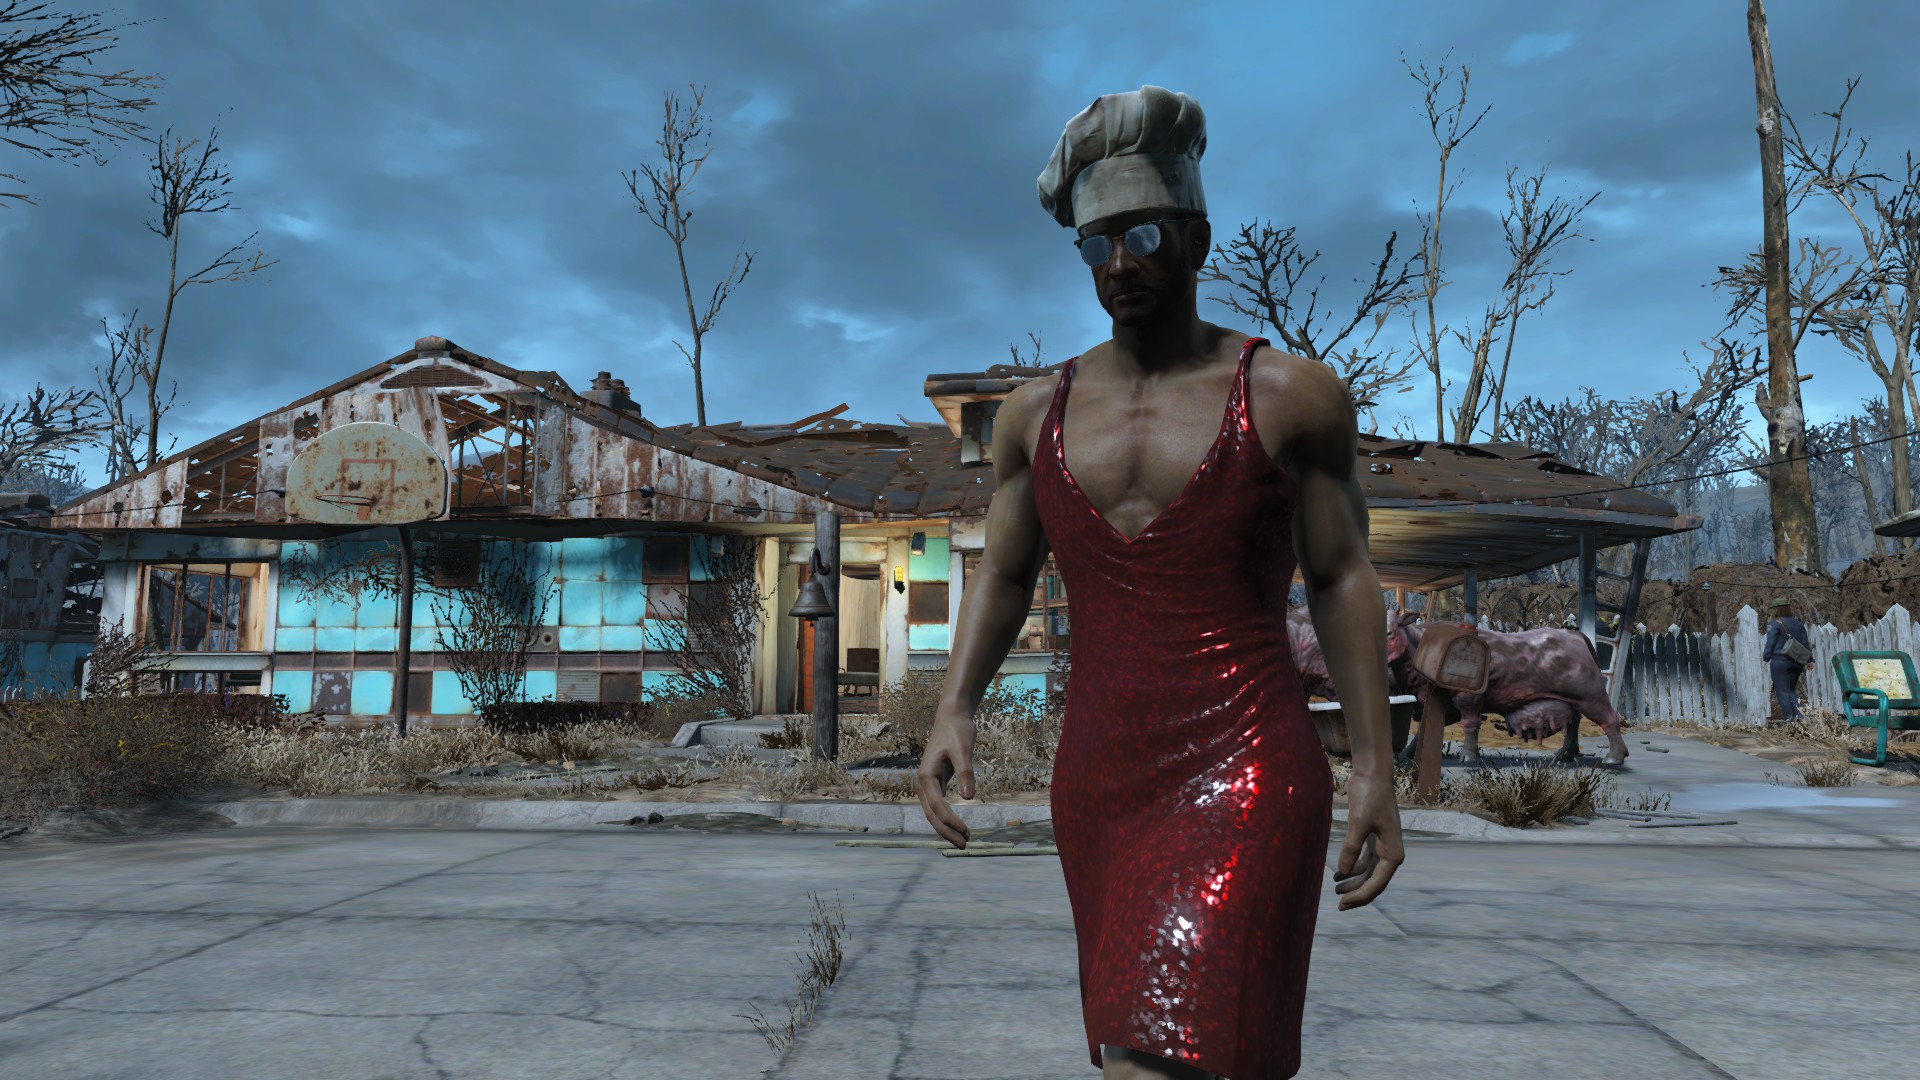 fallout 4 dress